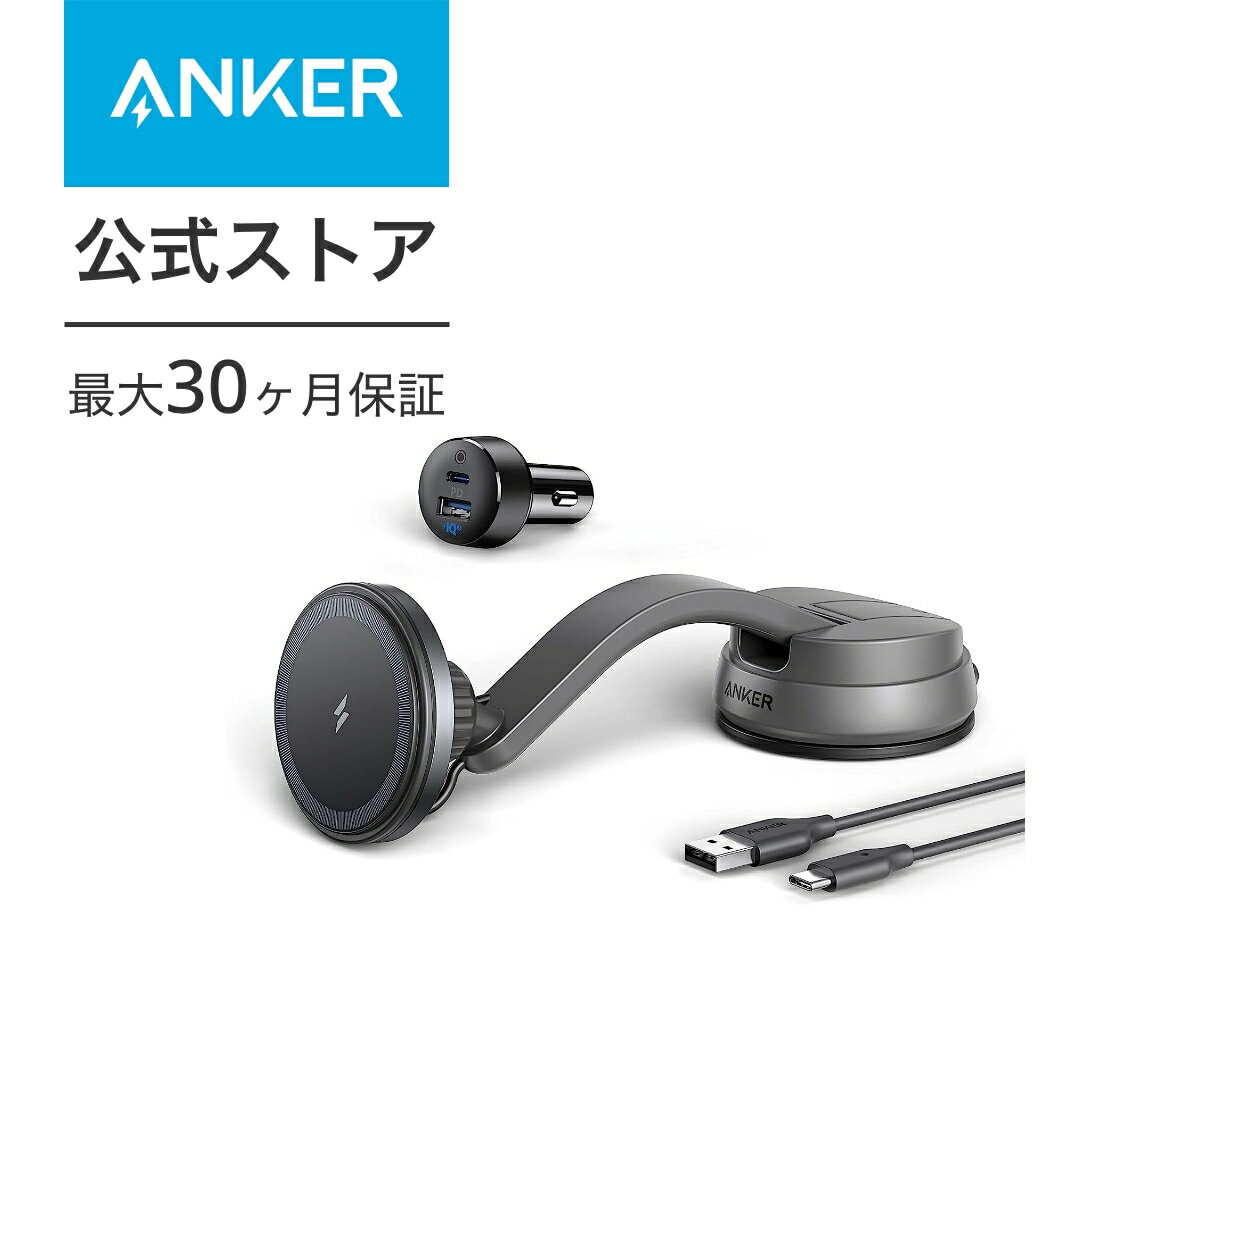 Anker 613 Magnetic Wireless Charger (MagGo) (マグネット式車載ホルダー)【カーチャージャー付属/マグネット式/ワイヤレス出力 (7.5W) / 車載ホルダー】iPhone 13 / 12 シリーズ専用